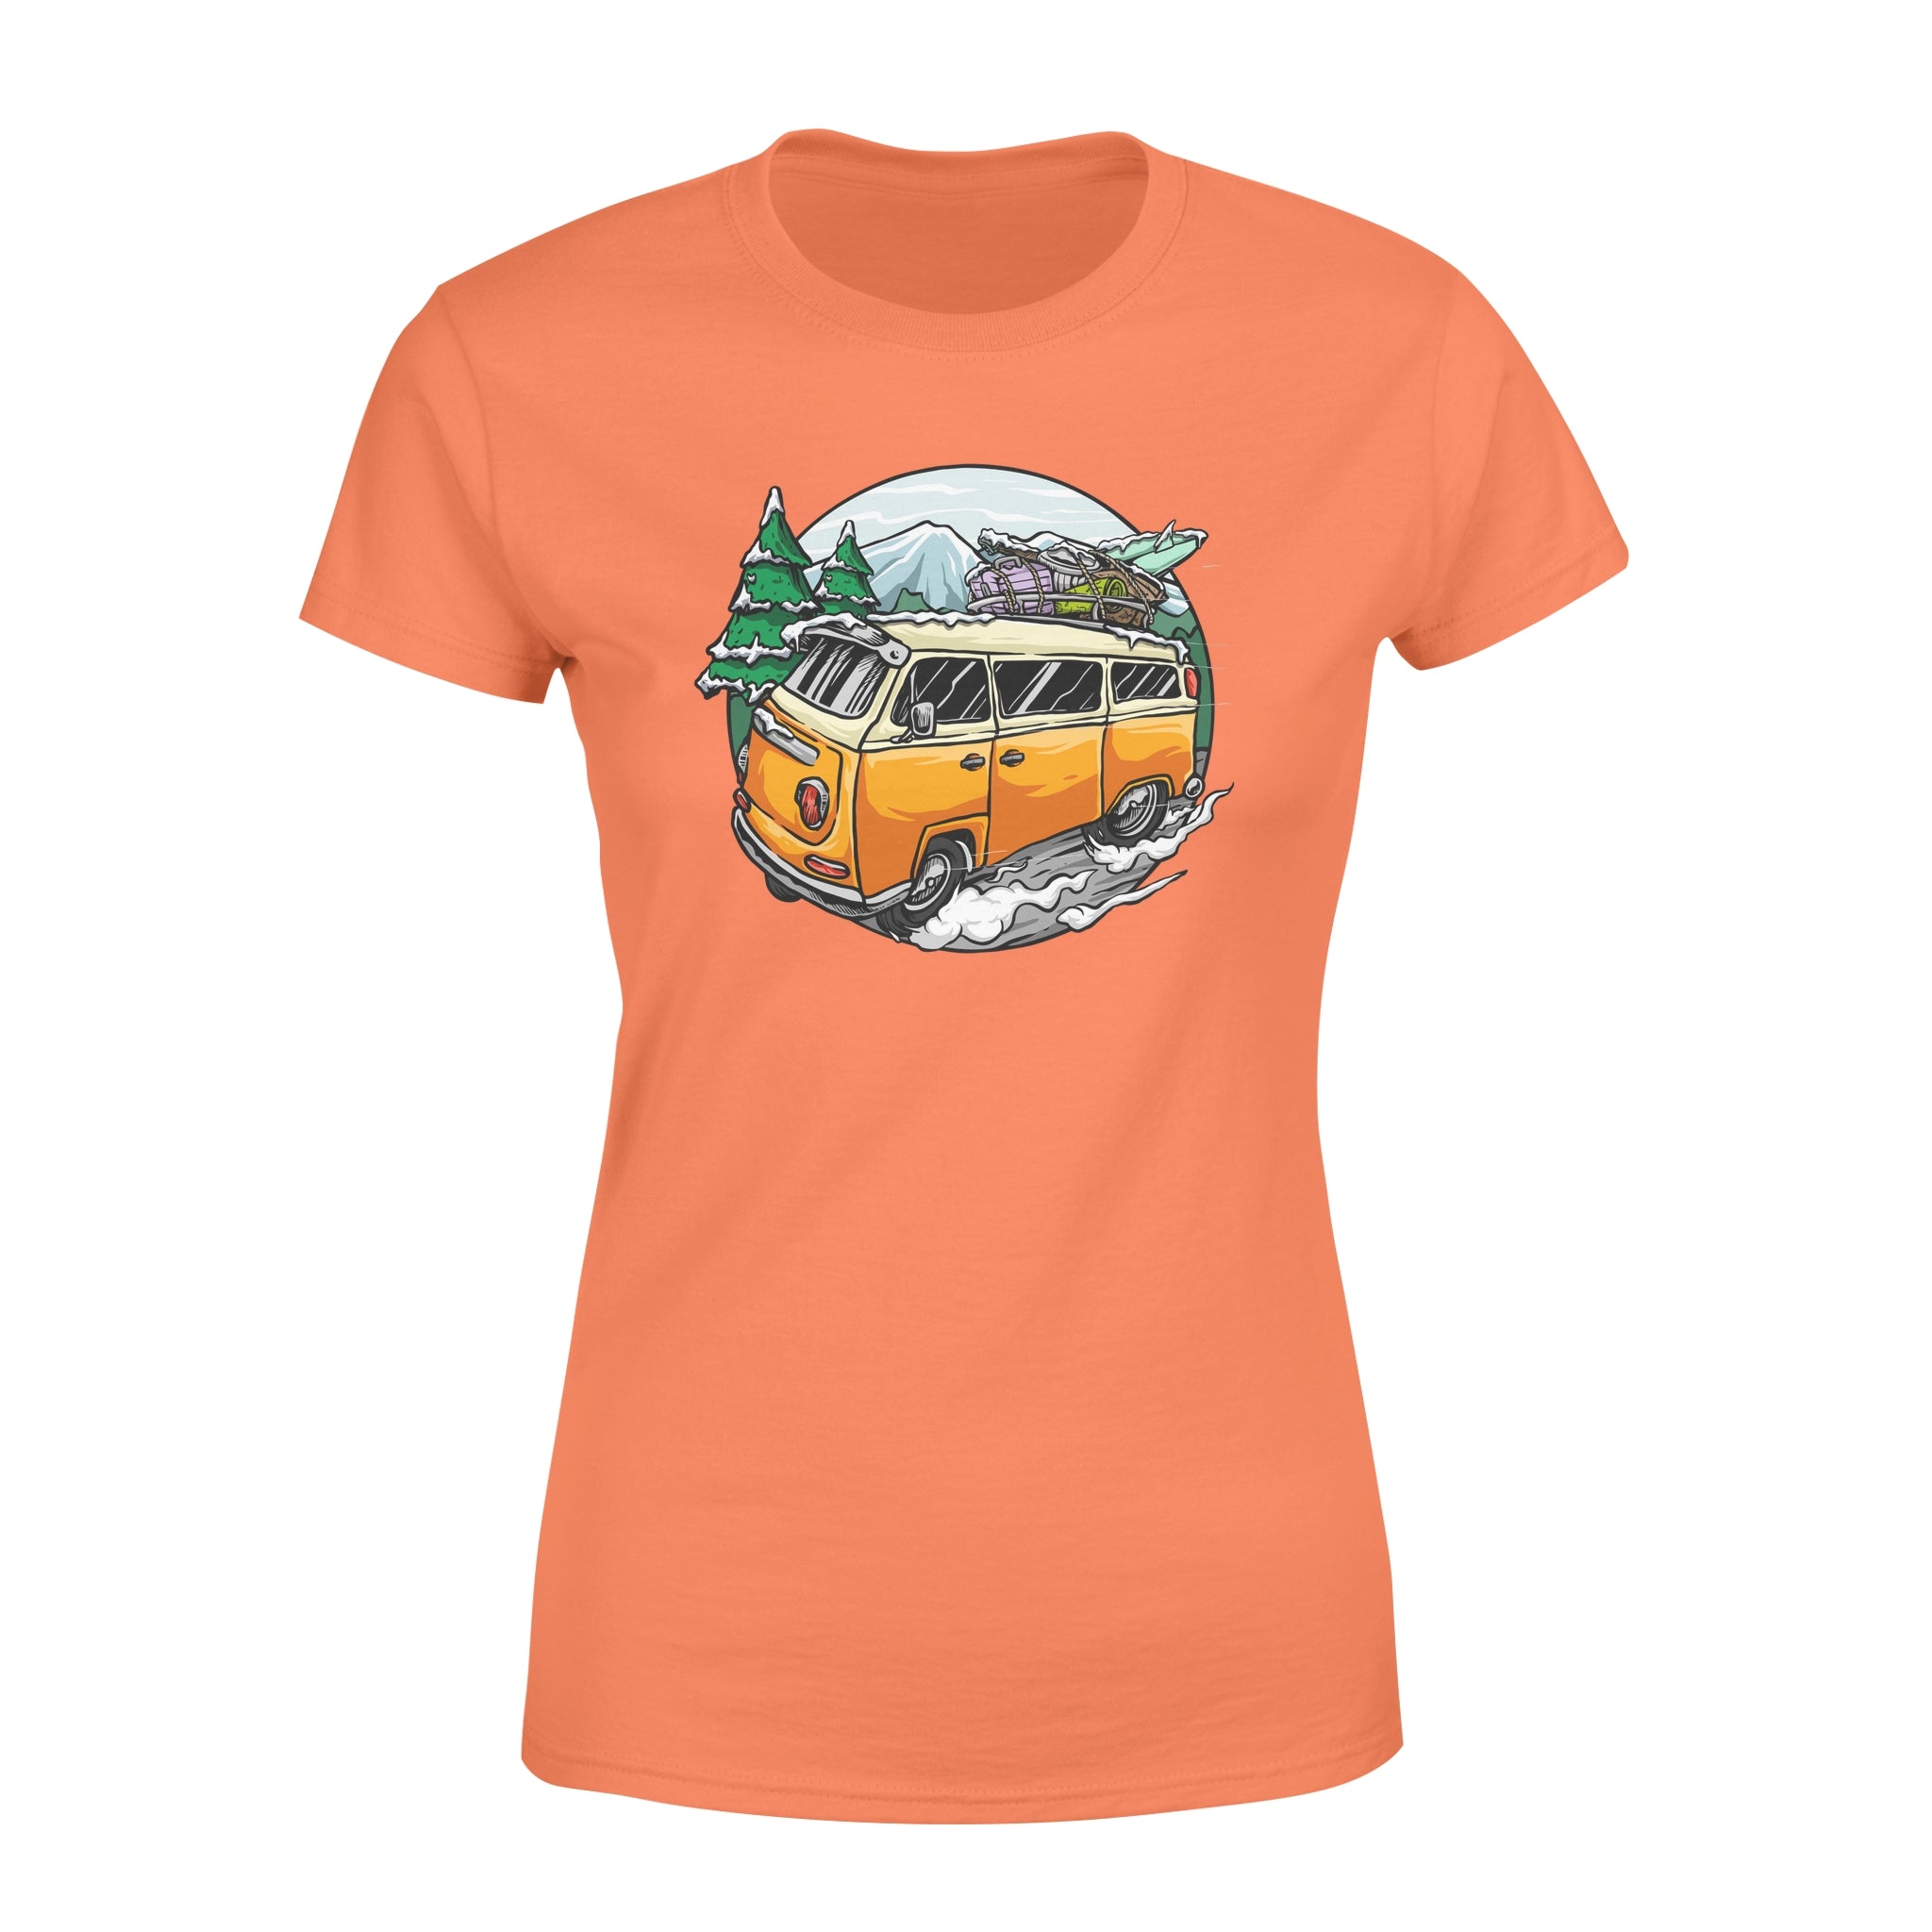 Winter Travel -  Women's T-shirt